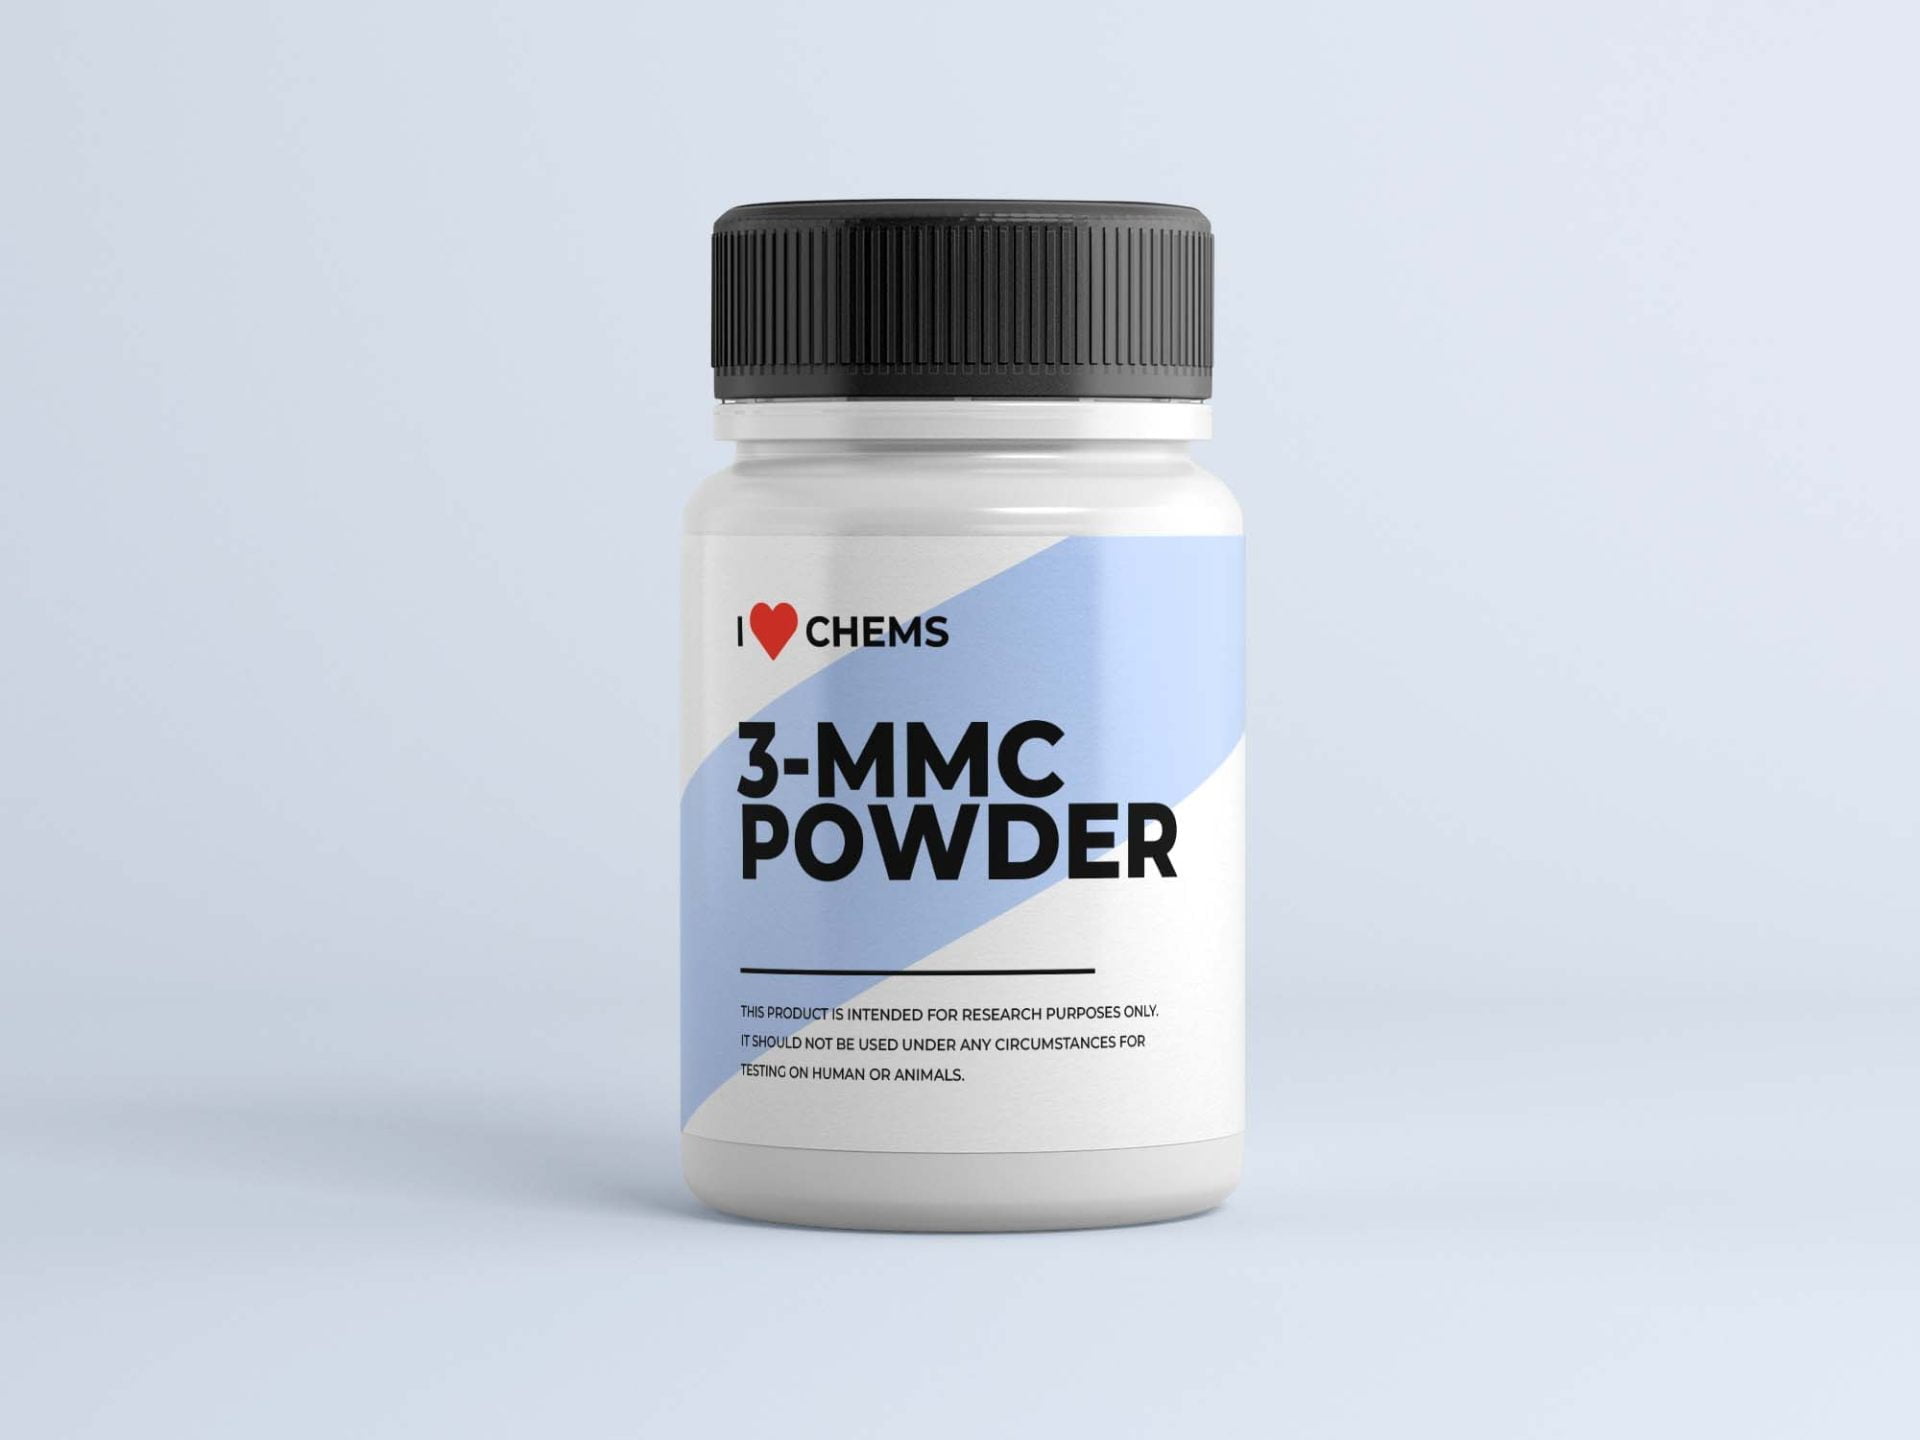 Kupte si 3 MMC Powder v I Love Chems. 3 Prodejna MMC v EU. Důvěryhodný RC prodejce